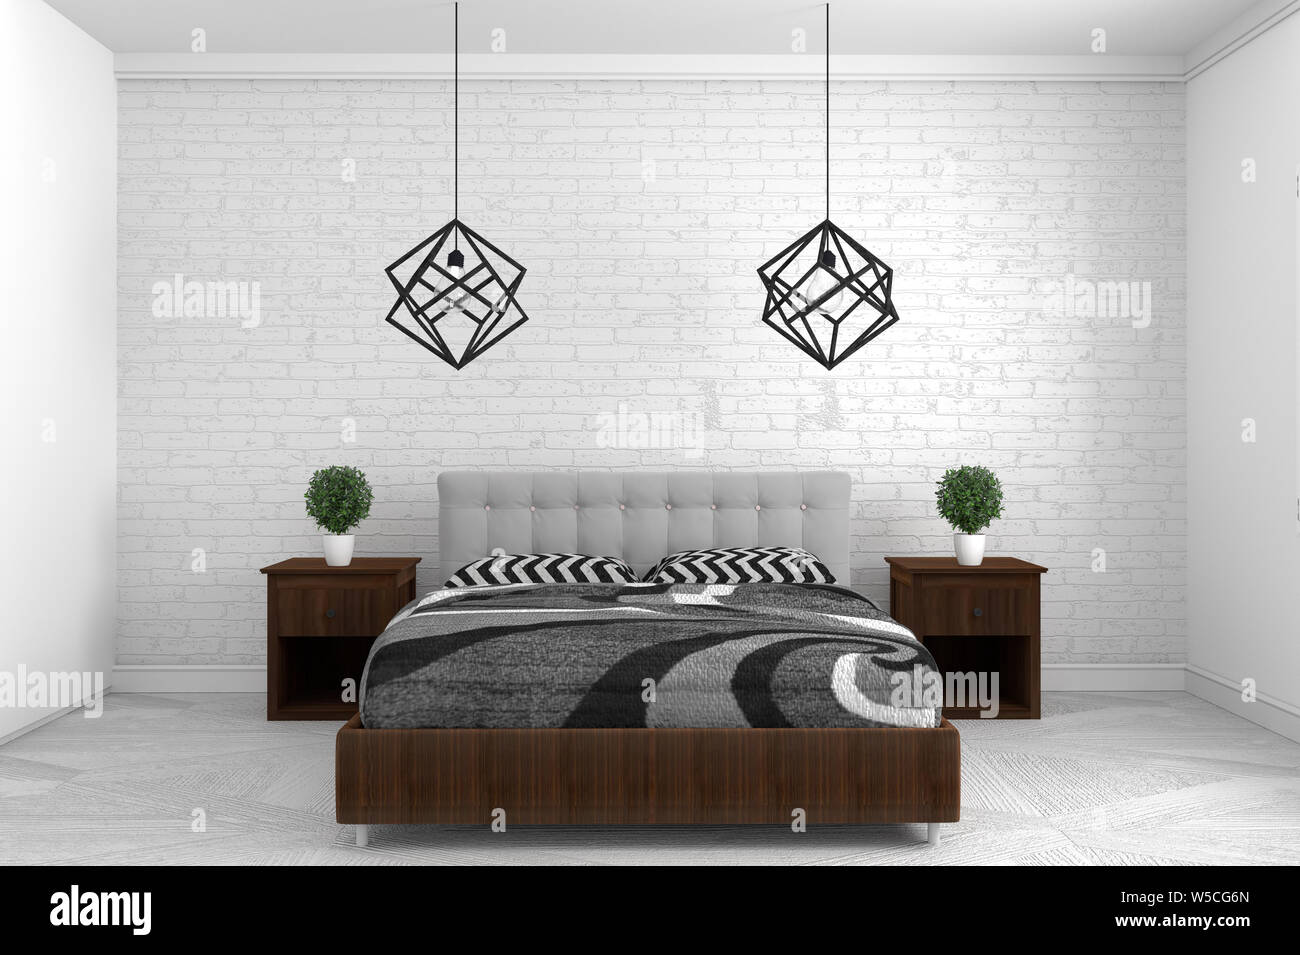 Phòng ngủ hiện đại trên nền sàn màu trắng là một lựa chọn tuyệt vời cho những người yêu thích phong cách tối giản. Với tông màu trầm, đơn giản, không gian phòng ngủ sẽ trở nên sang trọng, tinh tế và ấm áp. Hãy xem hình để tìm hiểu những chi tiết thiết kế nội thất độc đáo, sẽ giúp làm nên sự khác biệt cho căn phòng của bạn. 